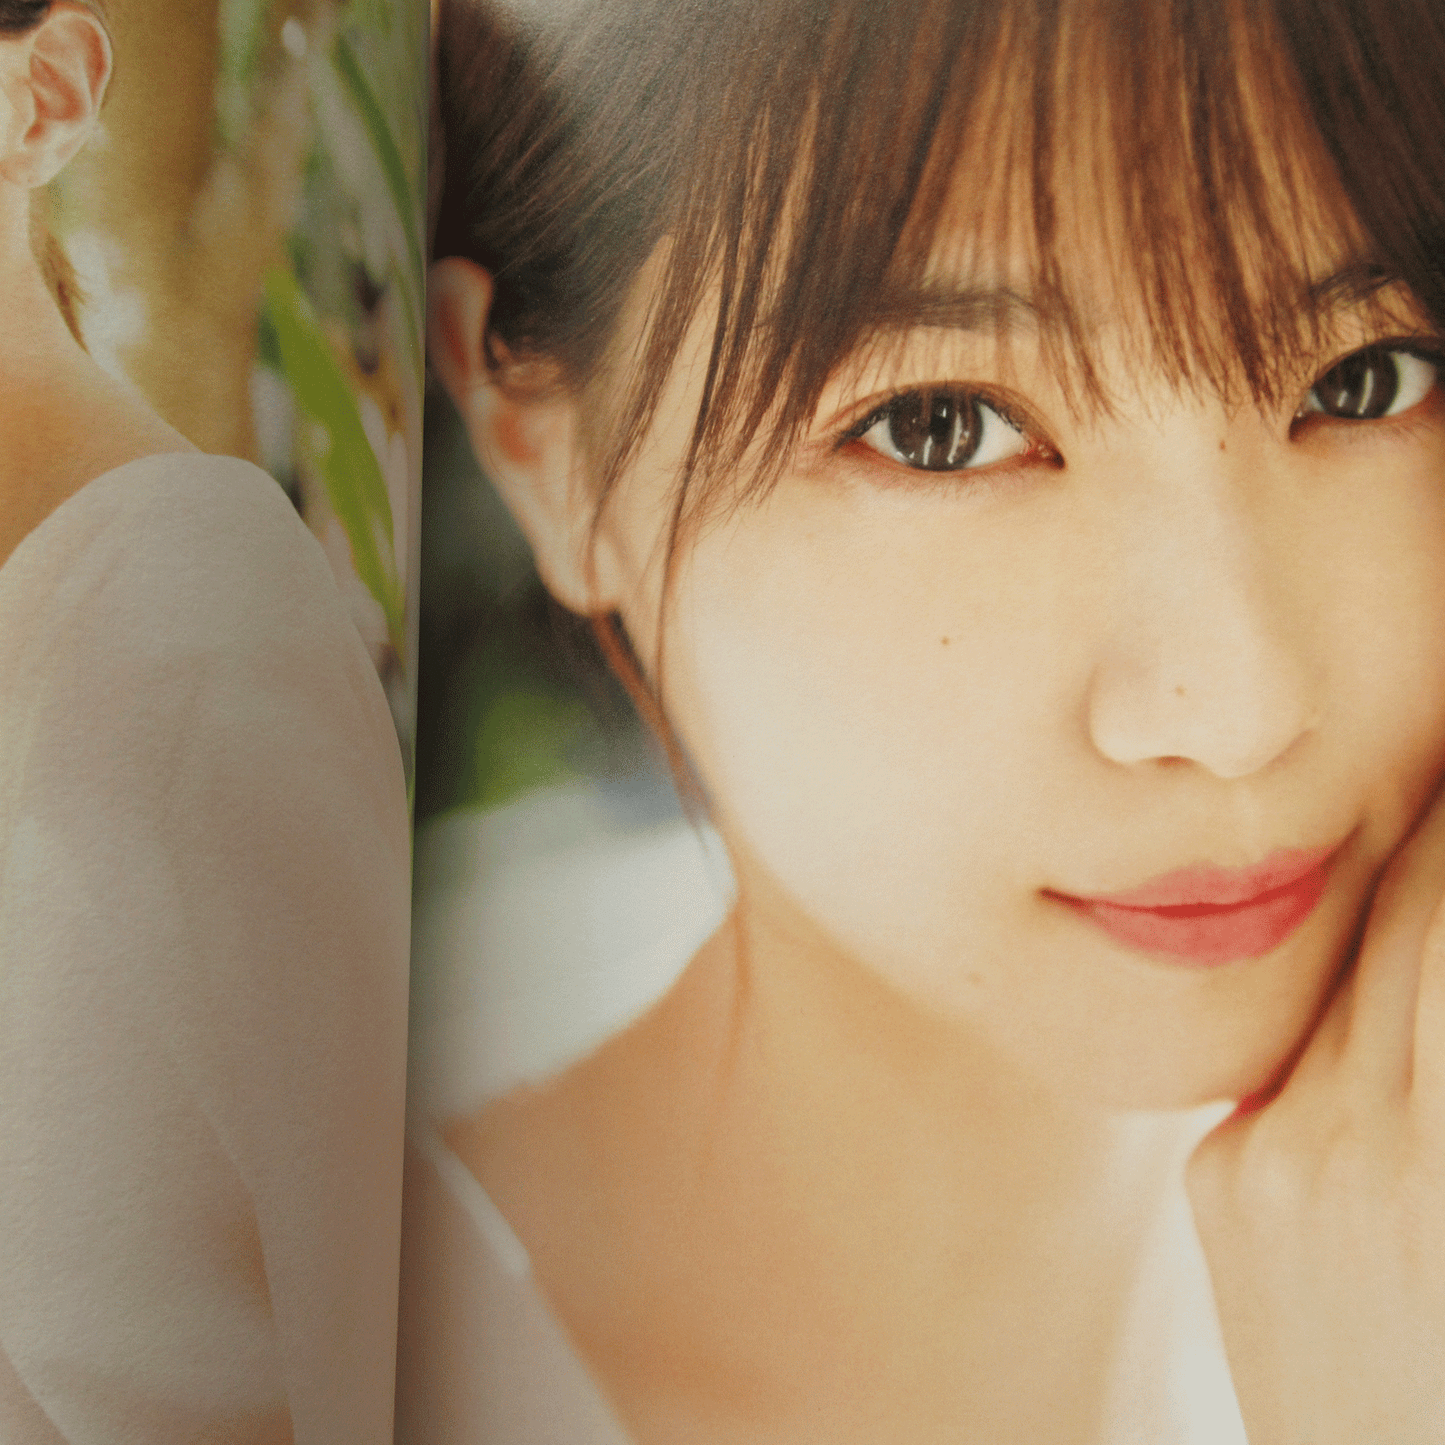 Nanase Nishino 1st Photo Book "watashino koto" /Nogizaka46